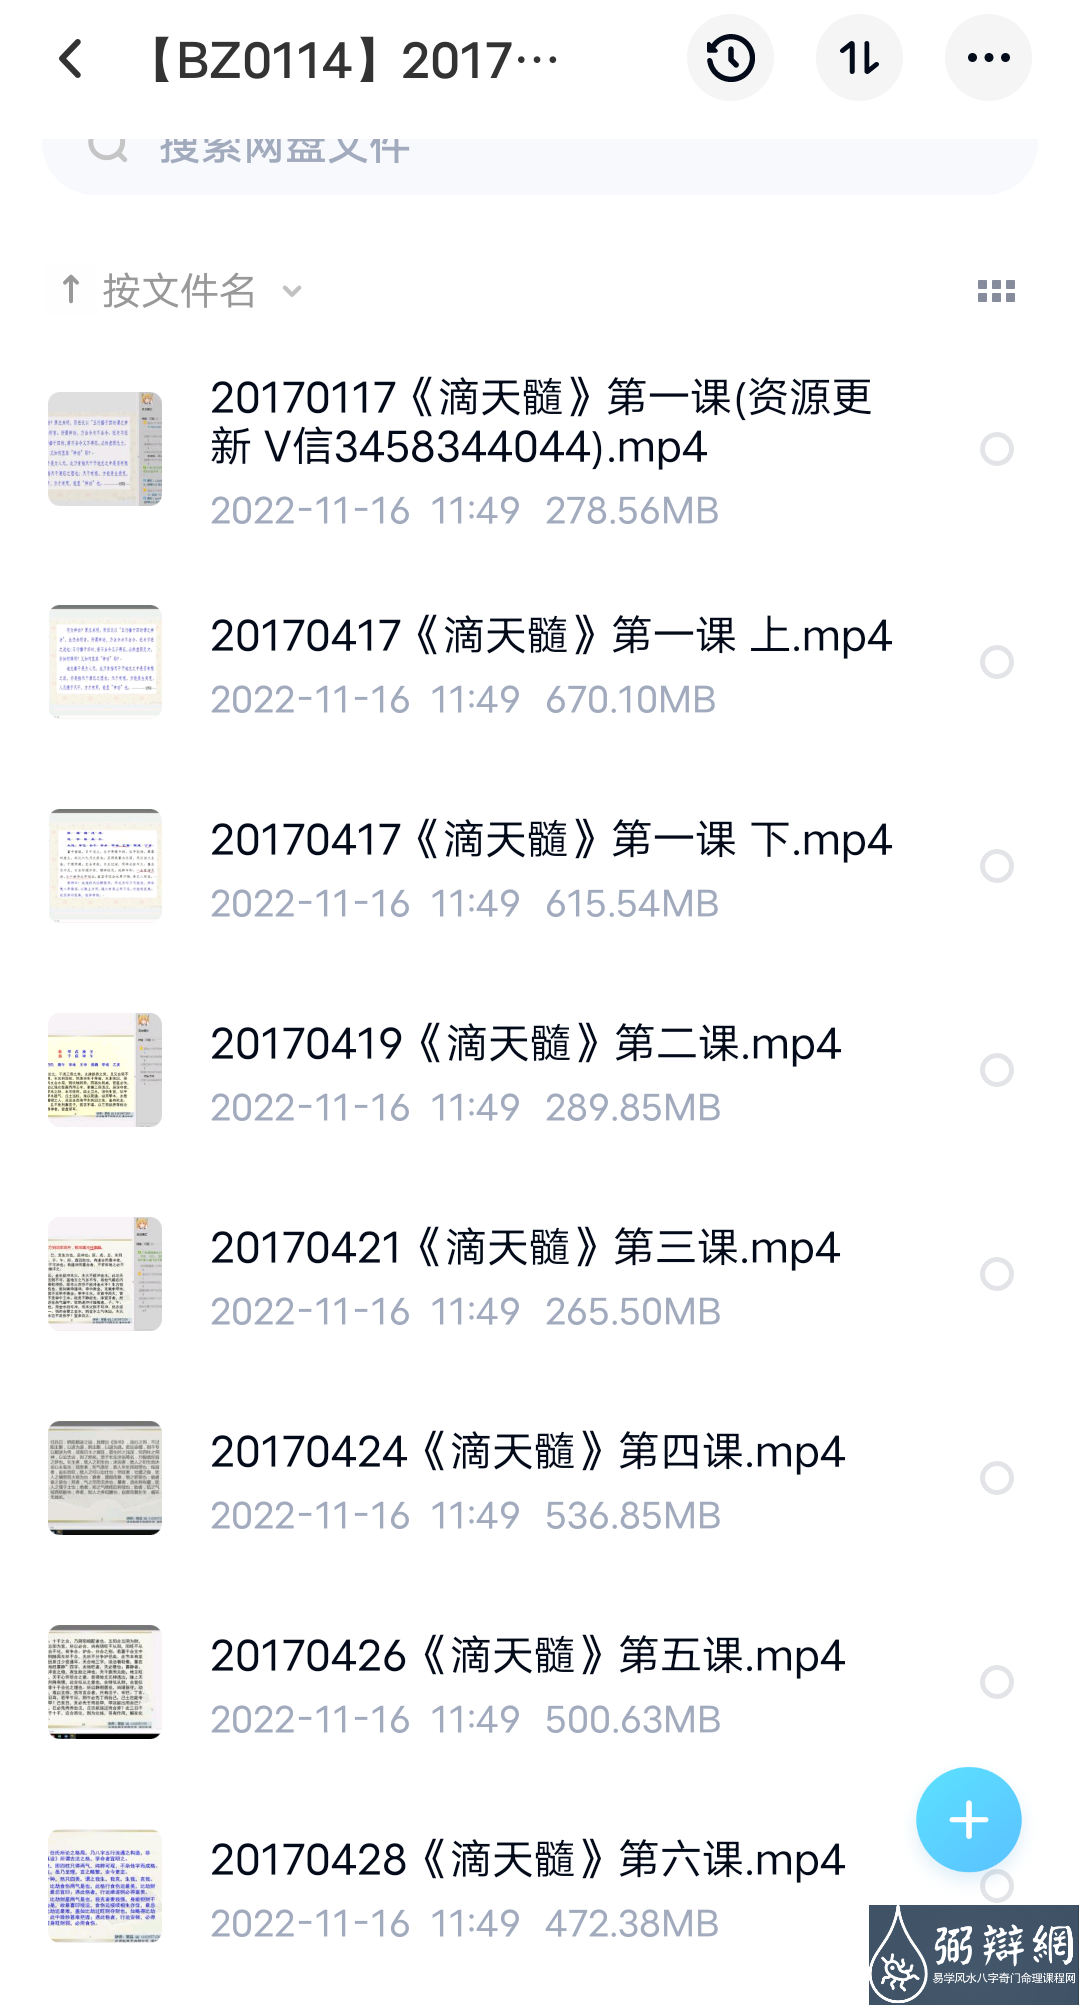 2017漫画命理滴天髓第二期SP(30集 13G） 百度网盘下载